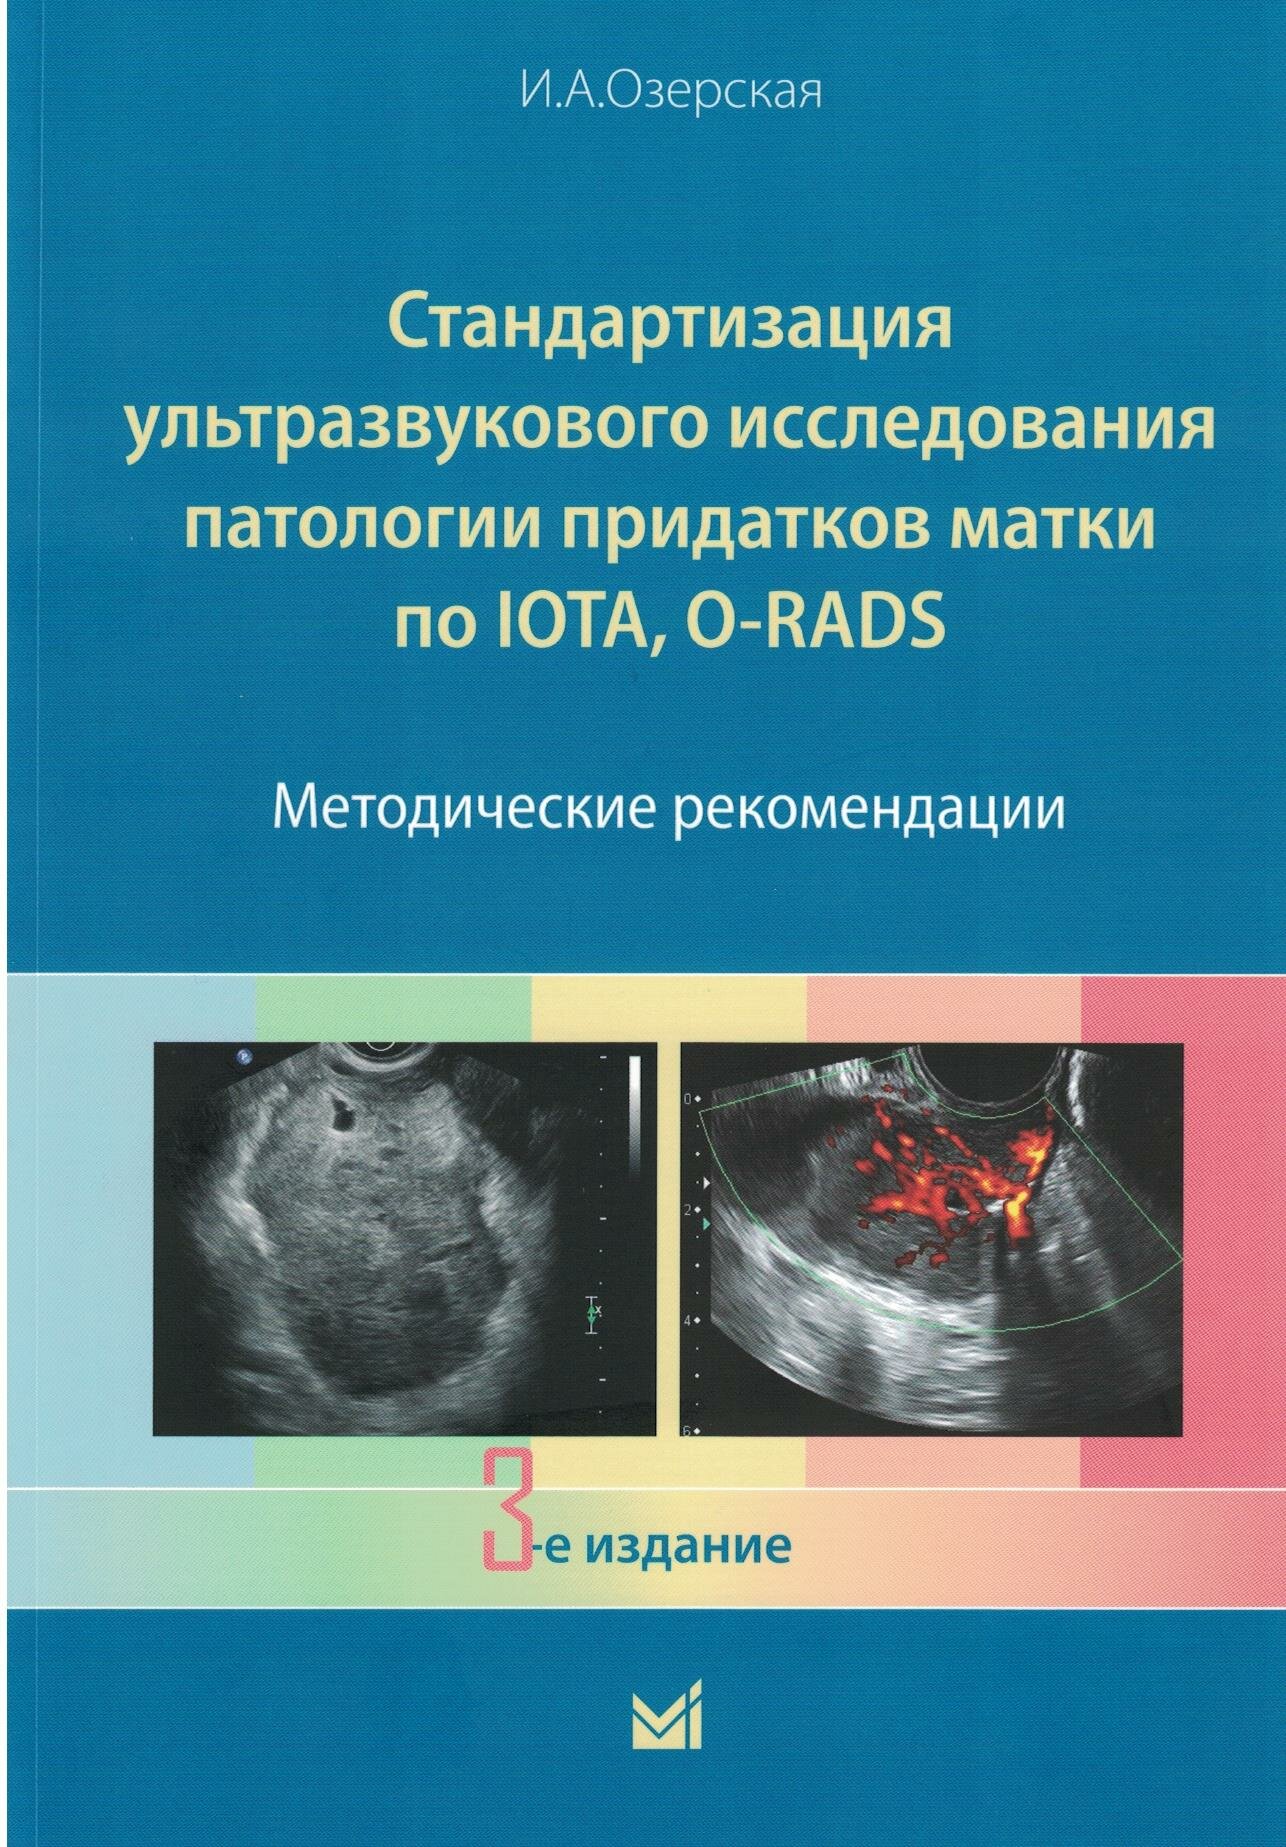 Стандартизация ультразвукового исследования патологии придатков матки по IOTA, O-RADS, 3-е издание